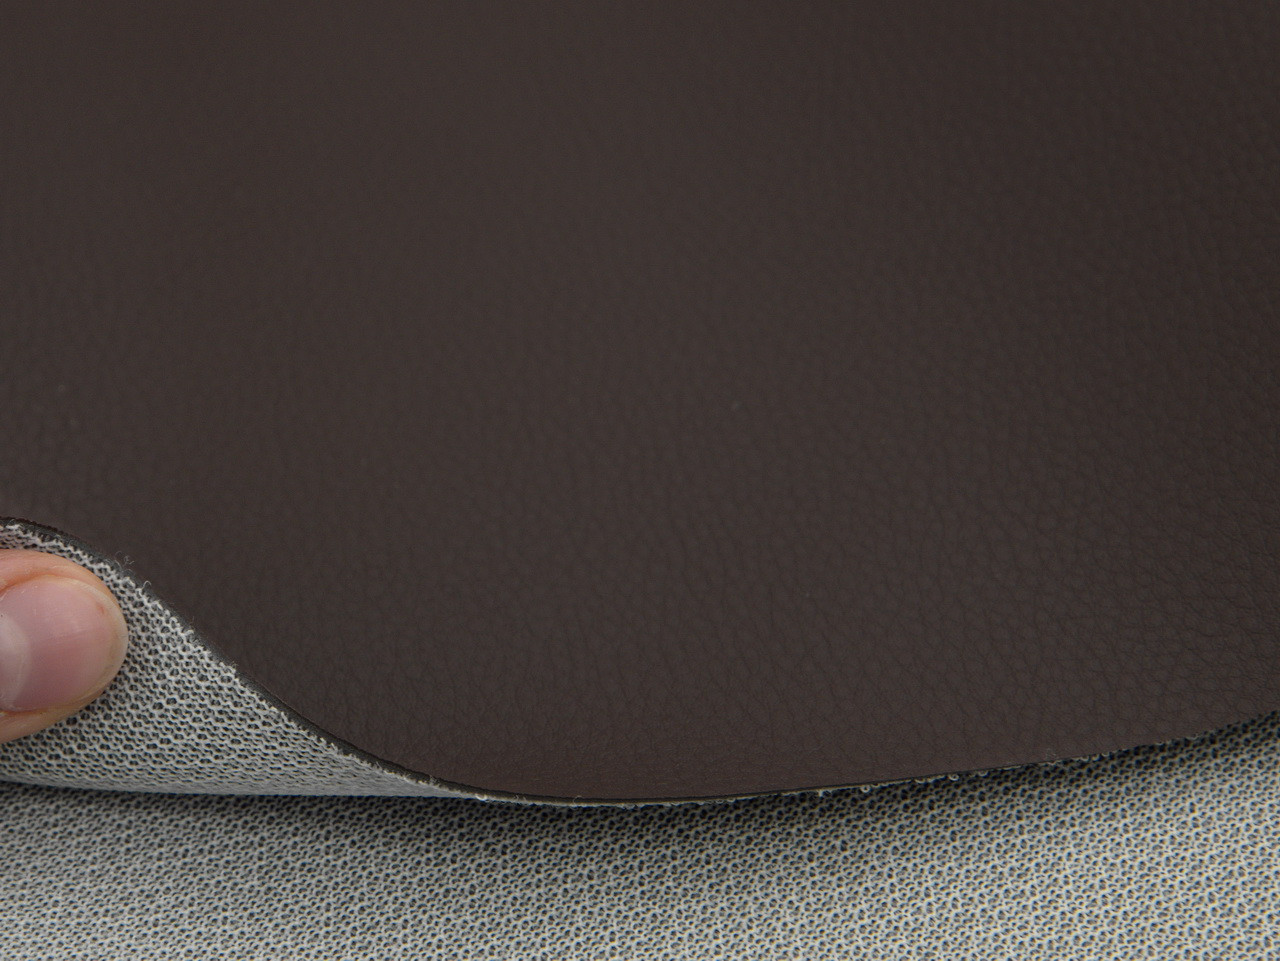 Автомобильный кожзам коричневый Porshe BR, на тканевой основе, ширина 160см детальная фотка